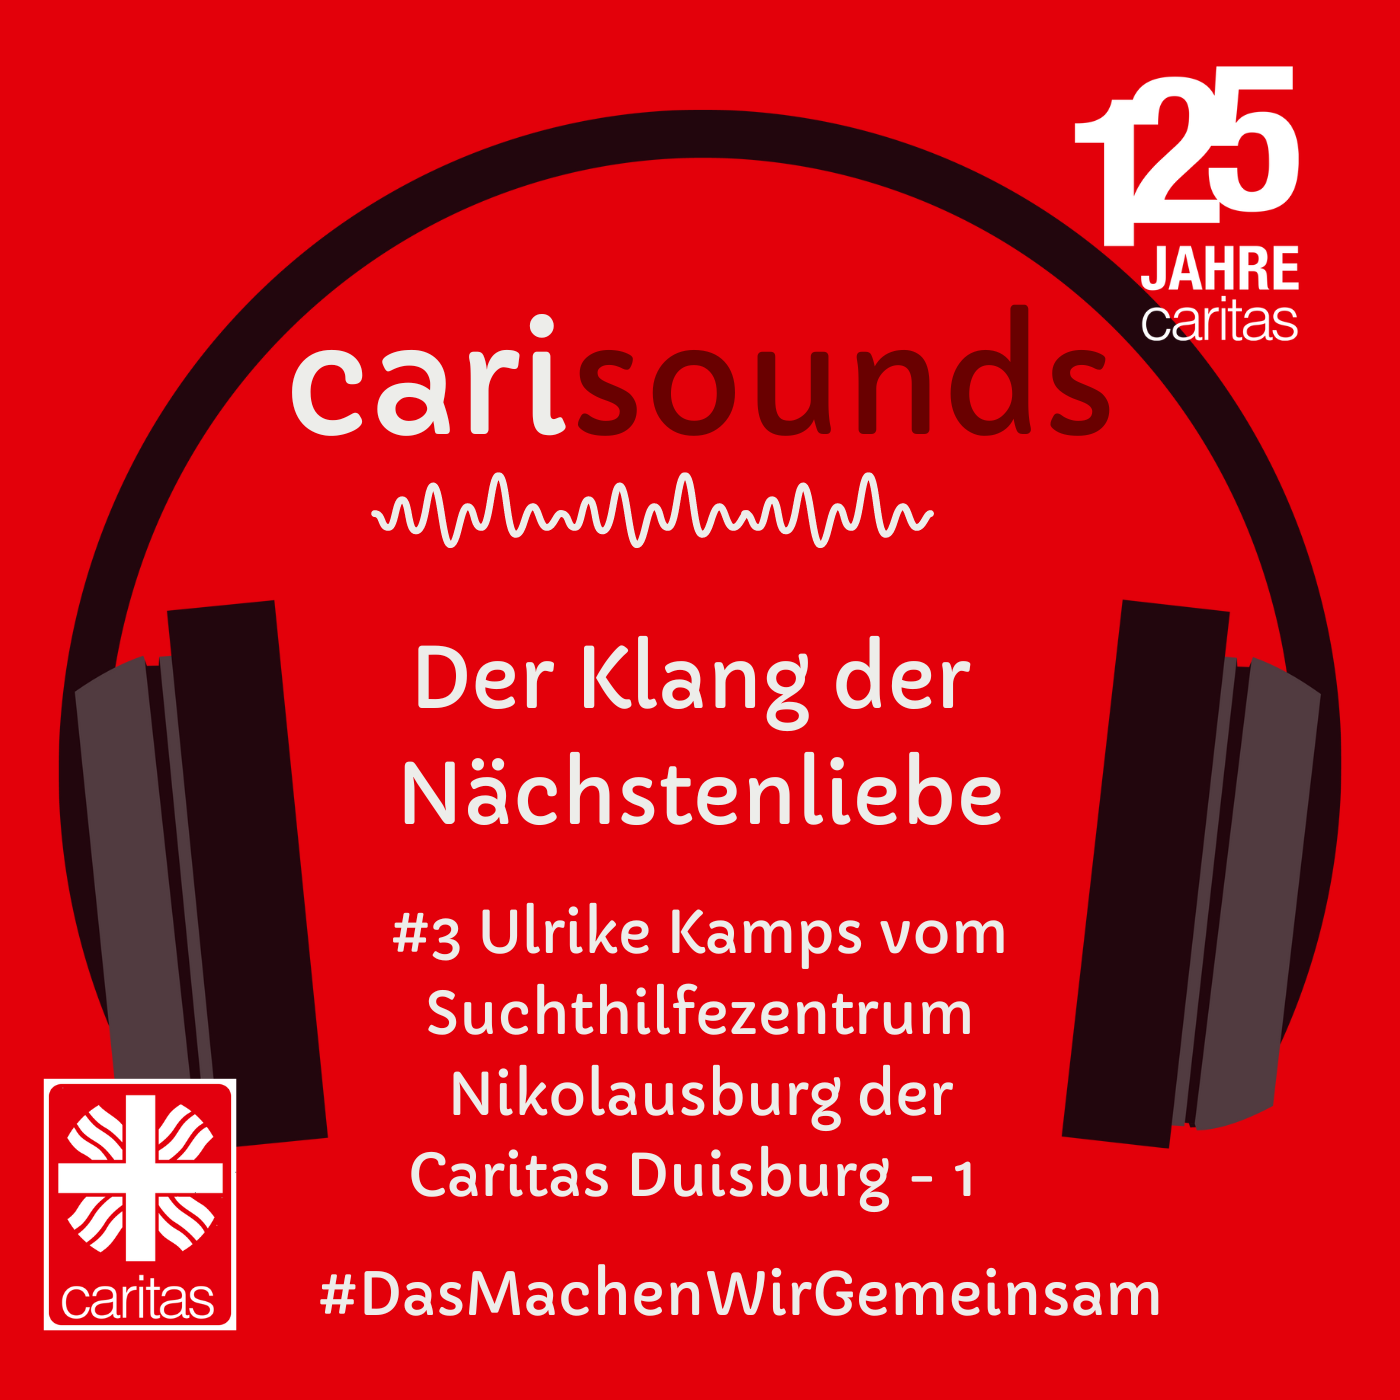 #3 carisounds - Der Klang der Nächstenliebe - Ulrike Kamps vom Suchthilfezentrum Nikolausburg der Caritas Duisburg